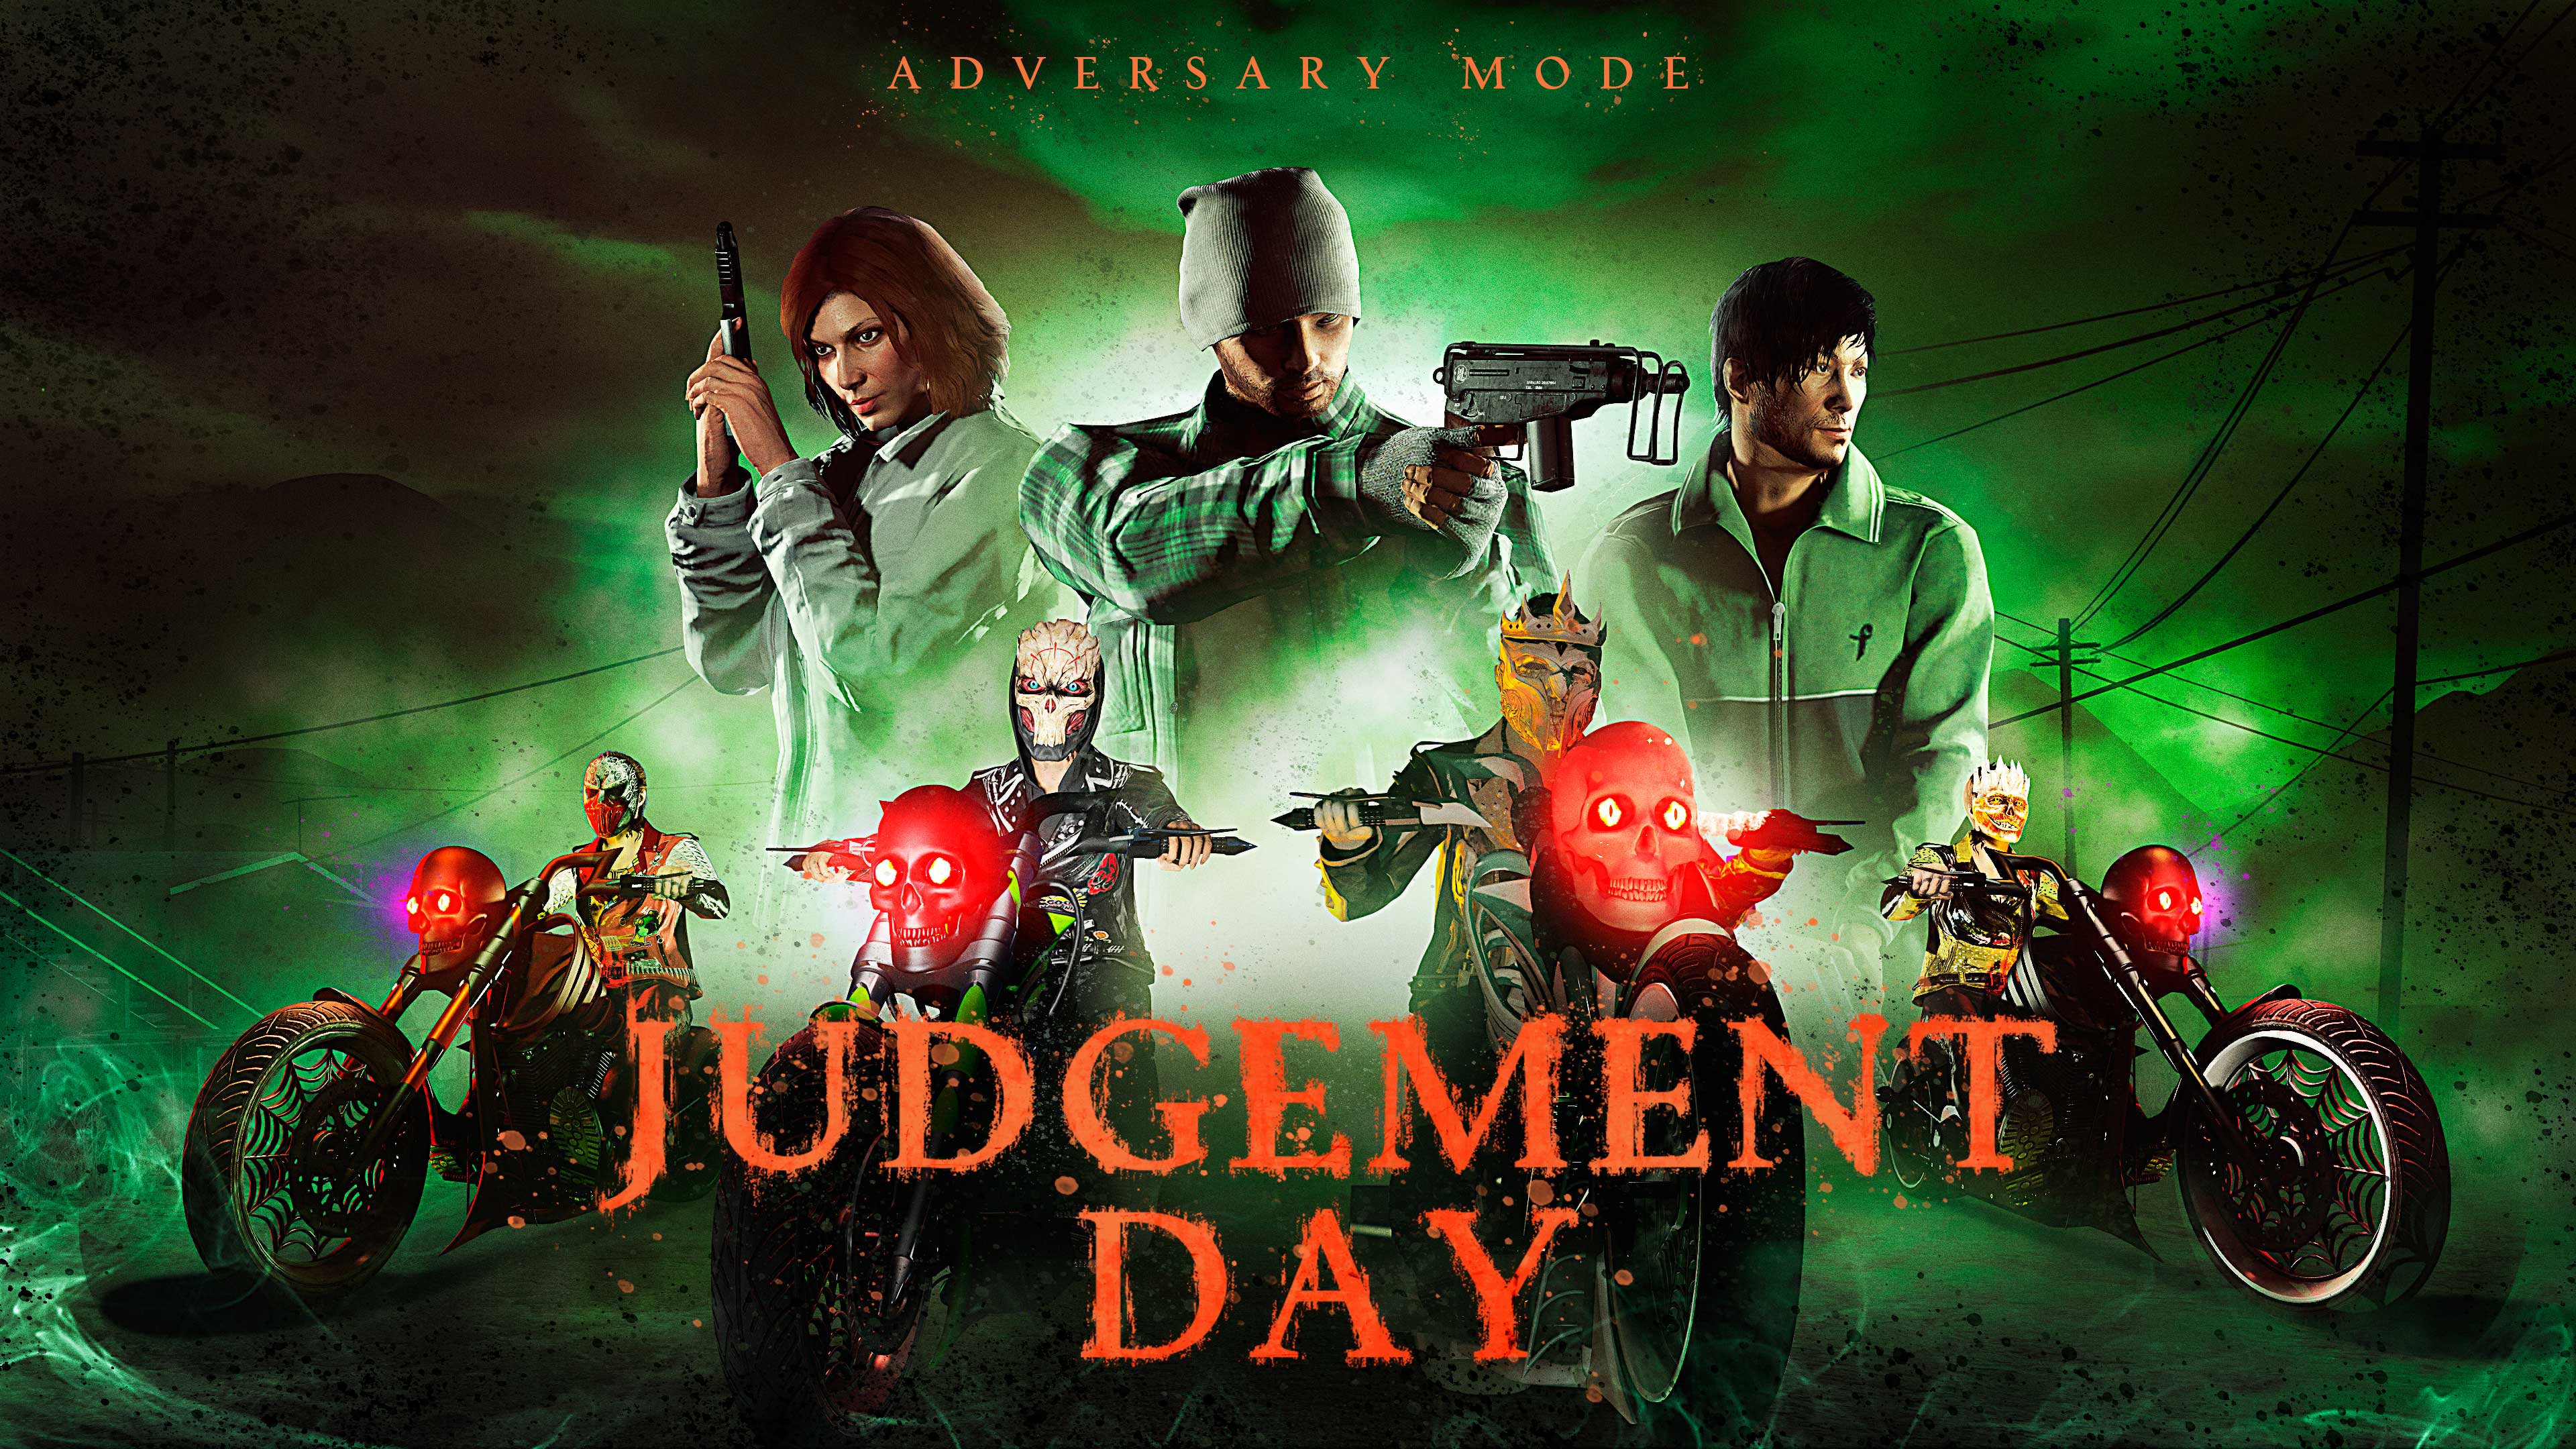 GTA Online Judgement Day